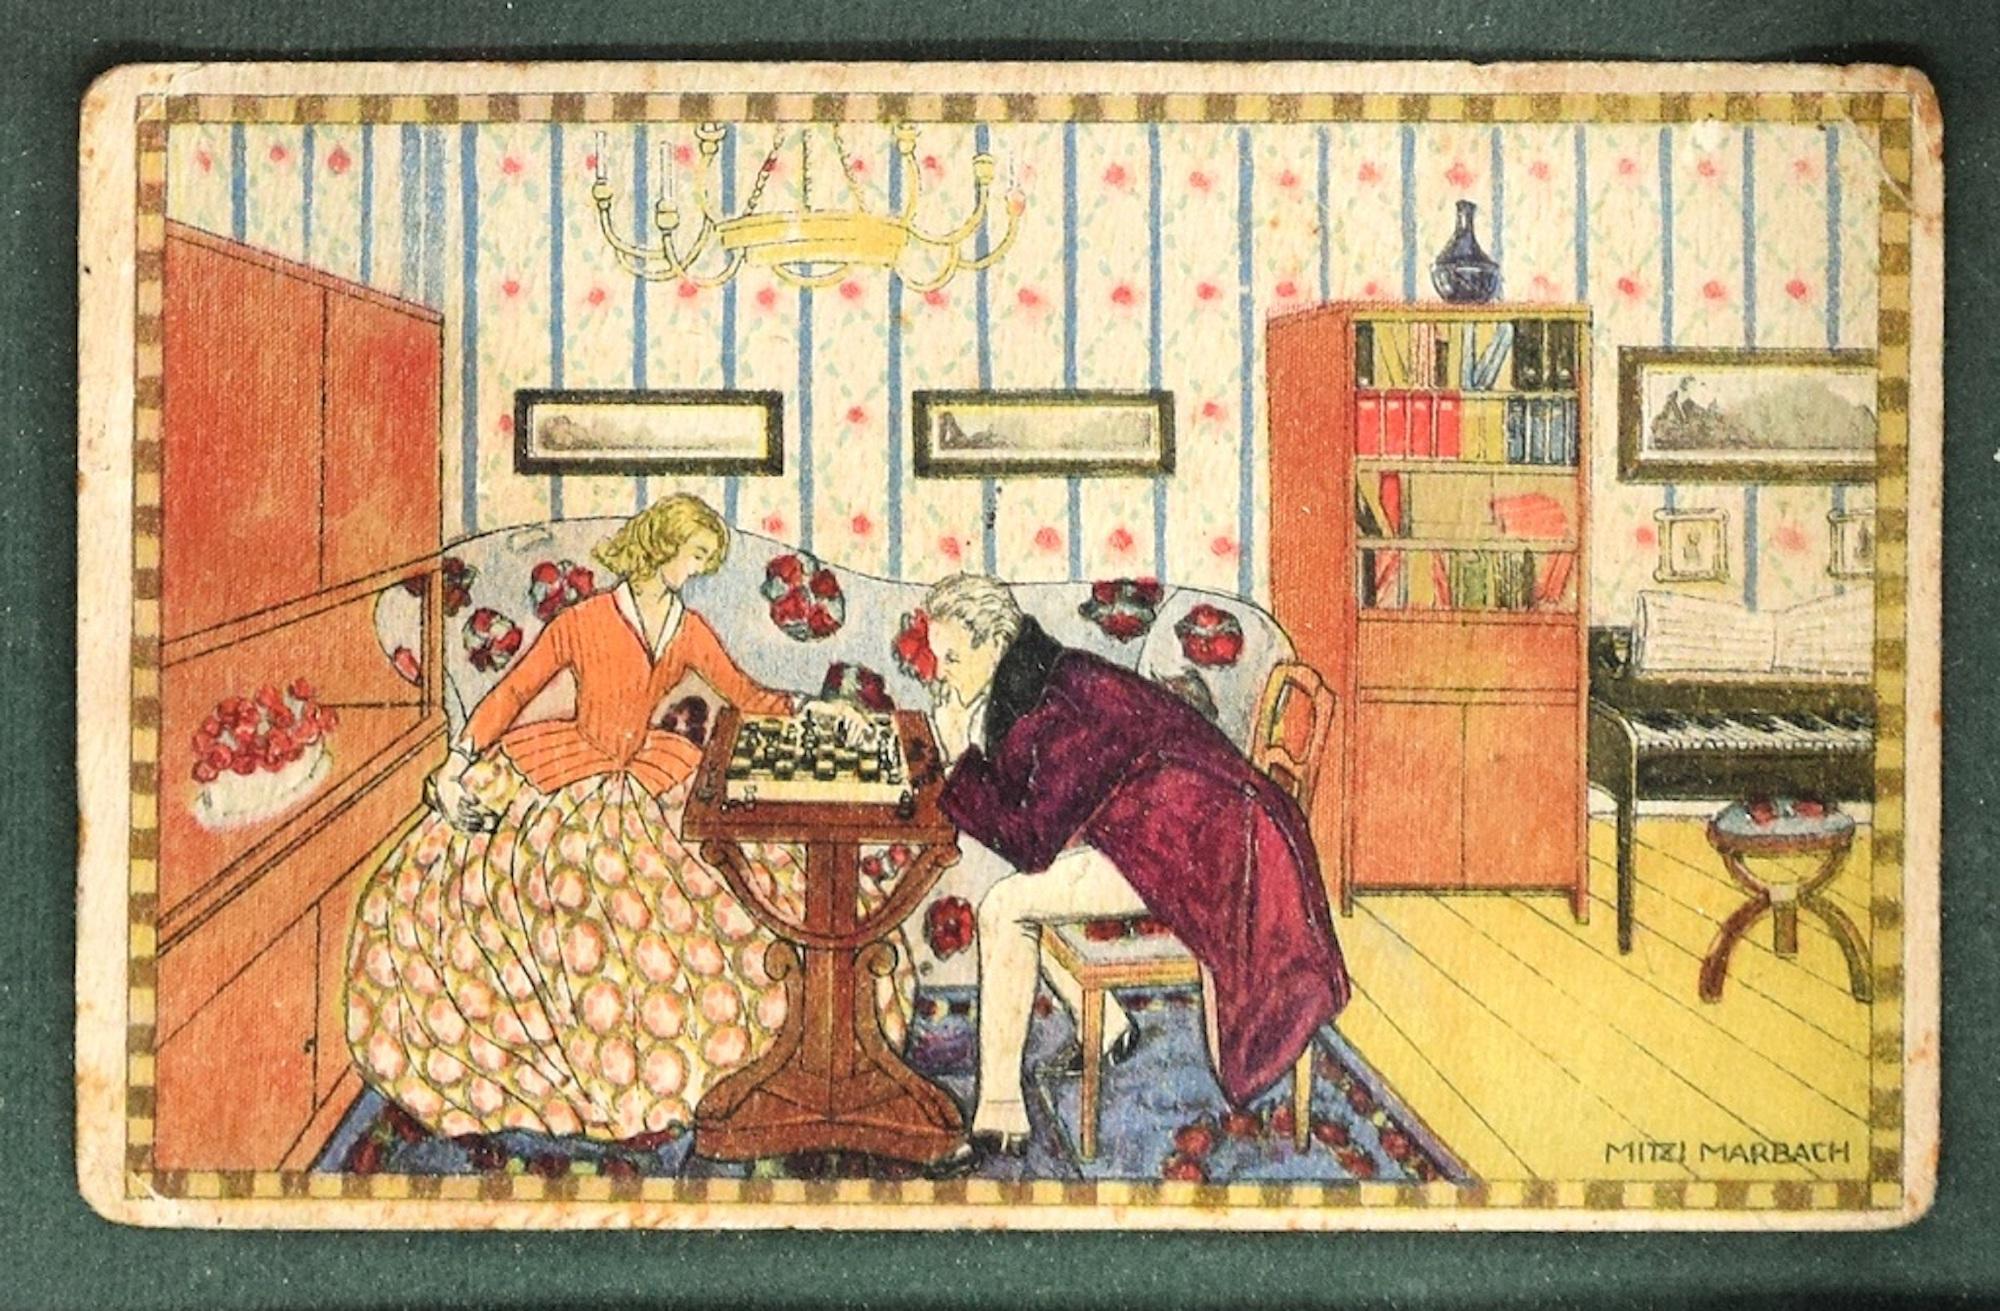 Chess Game ist eine wunderbare Farbe lithographierte Postkarte in den frühen Jahren des XX Jahrhunderts von der österreichischen Künstlerin, Mitzi Marbach realisiert.

Eine schöne, wenig dimensionierte Postkarte im Jugendstil, signiert auf der